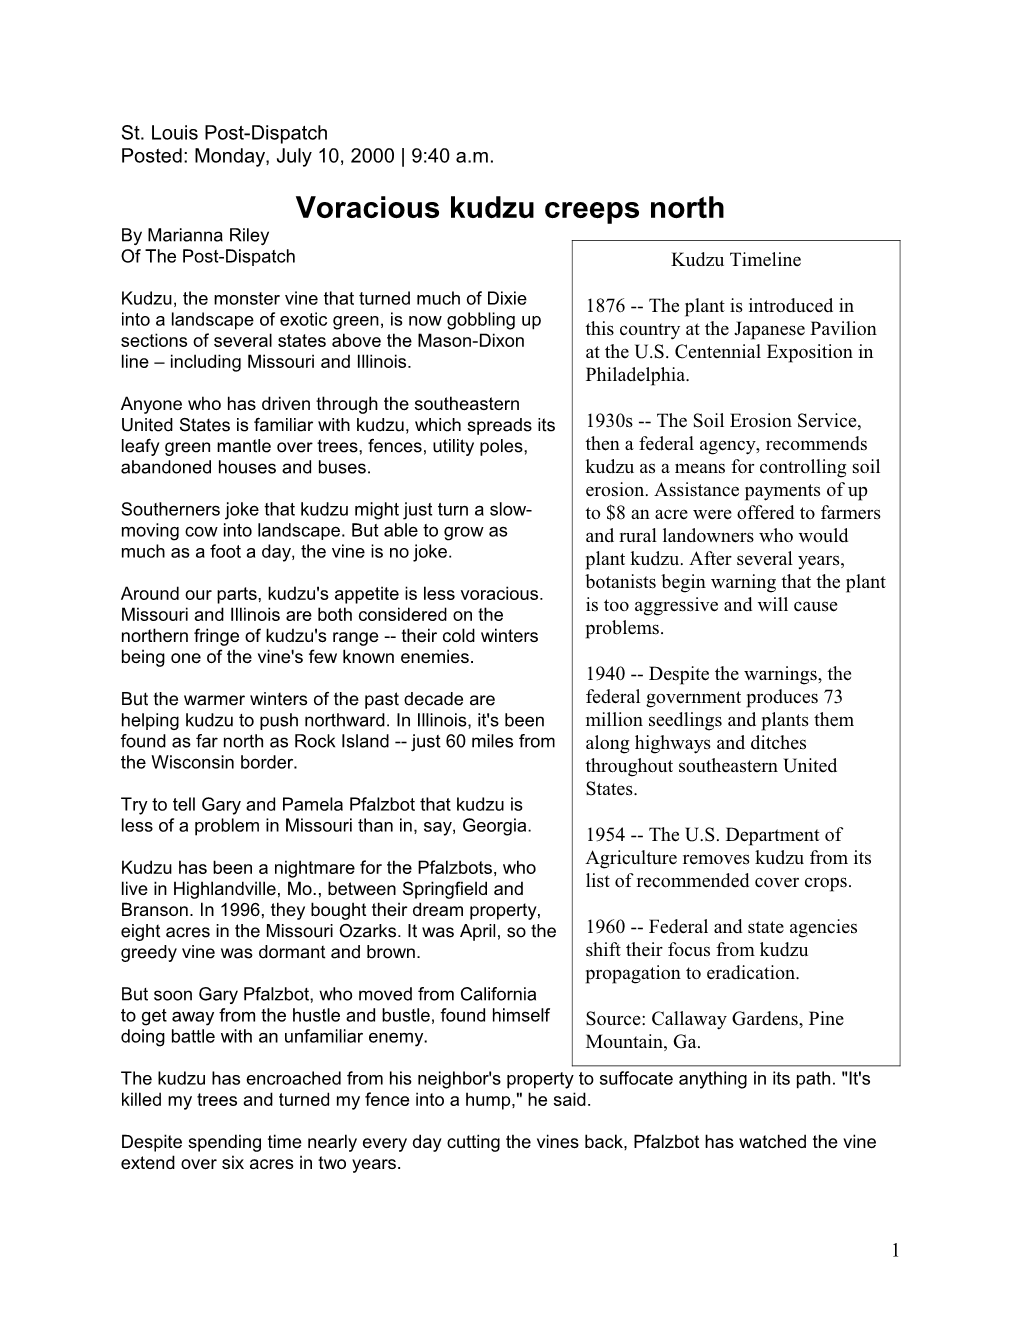 Voracious Kudzu Creeps North